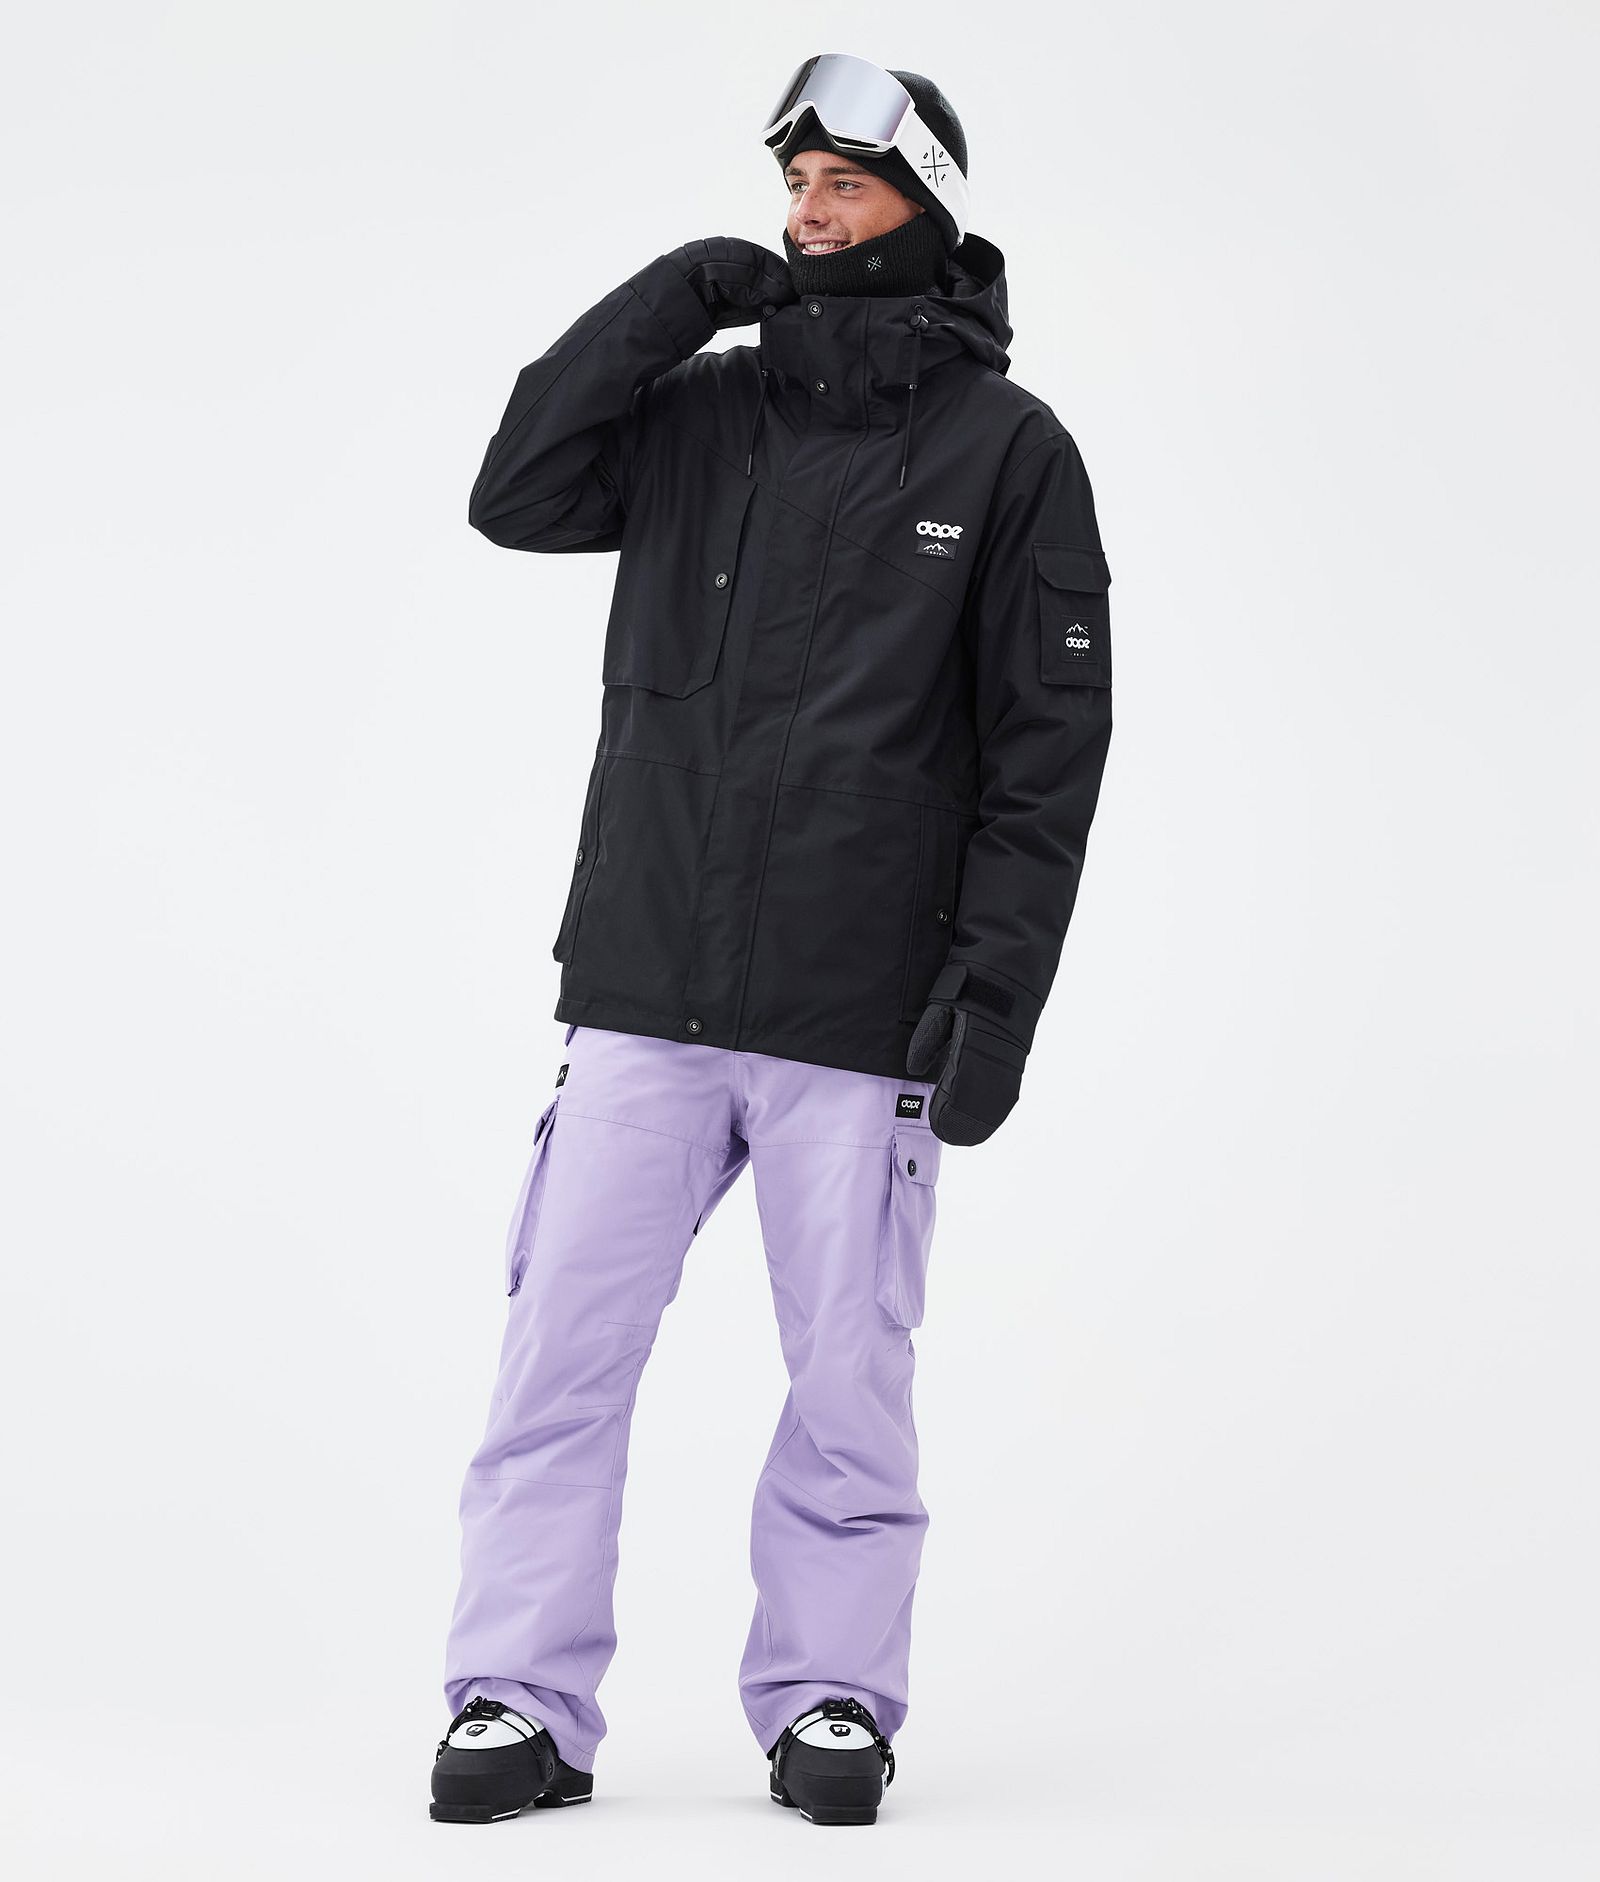 Iconic Pantalon de Ski Homme Faded Violet